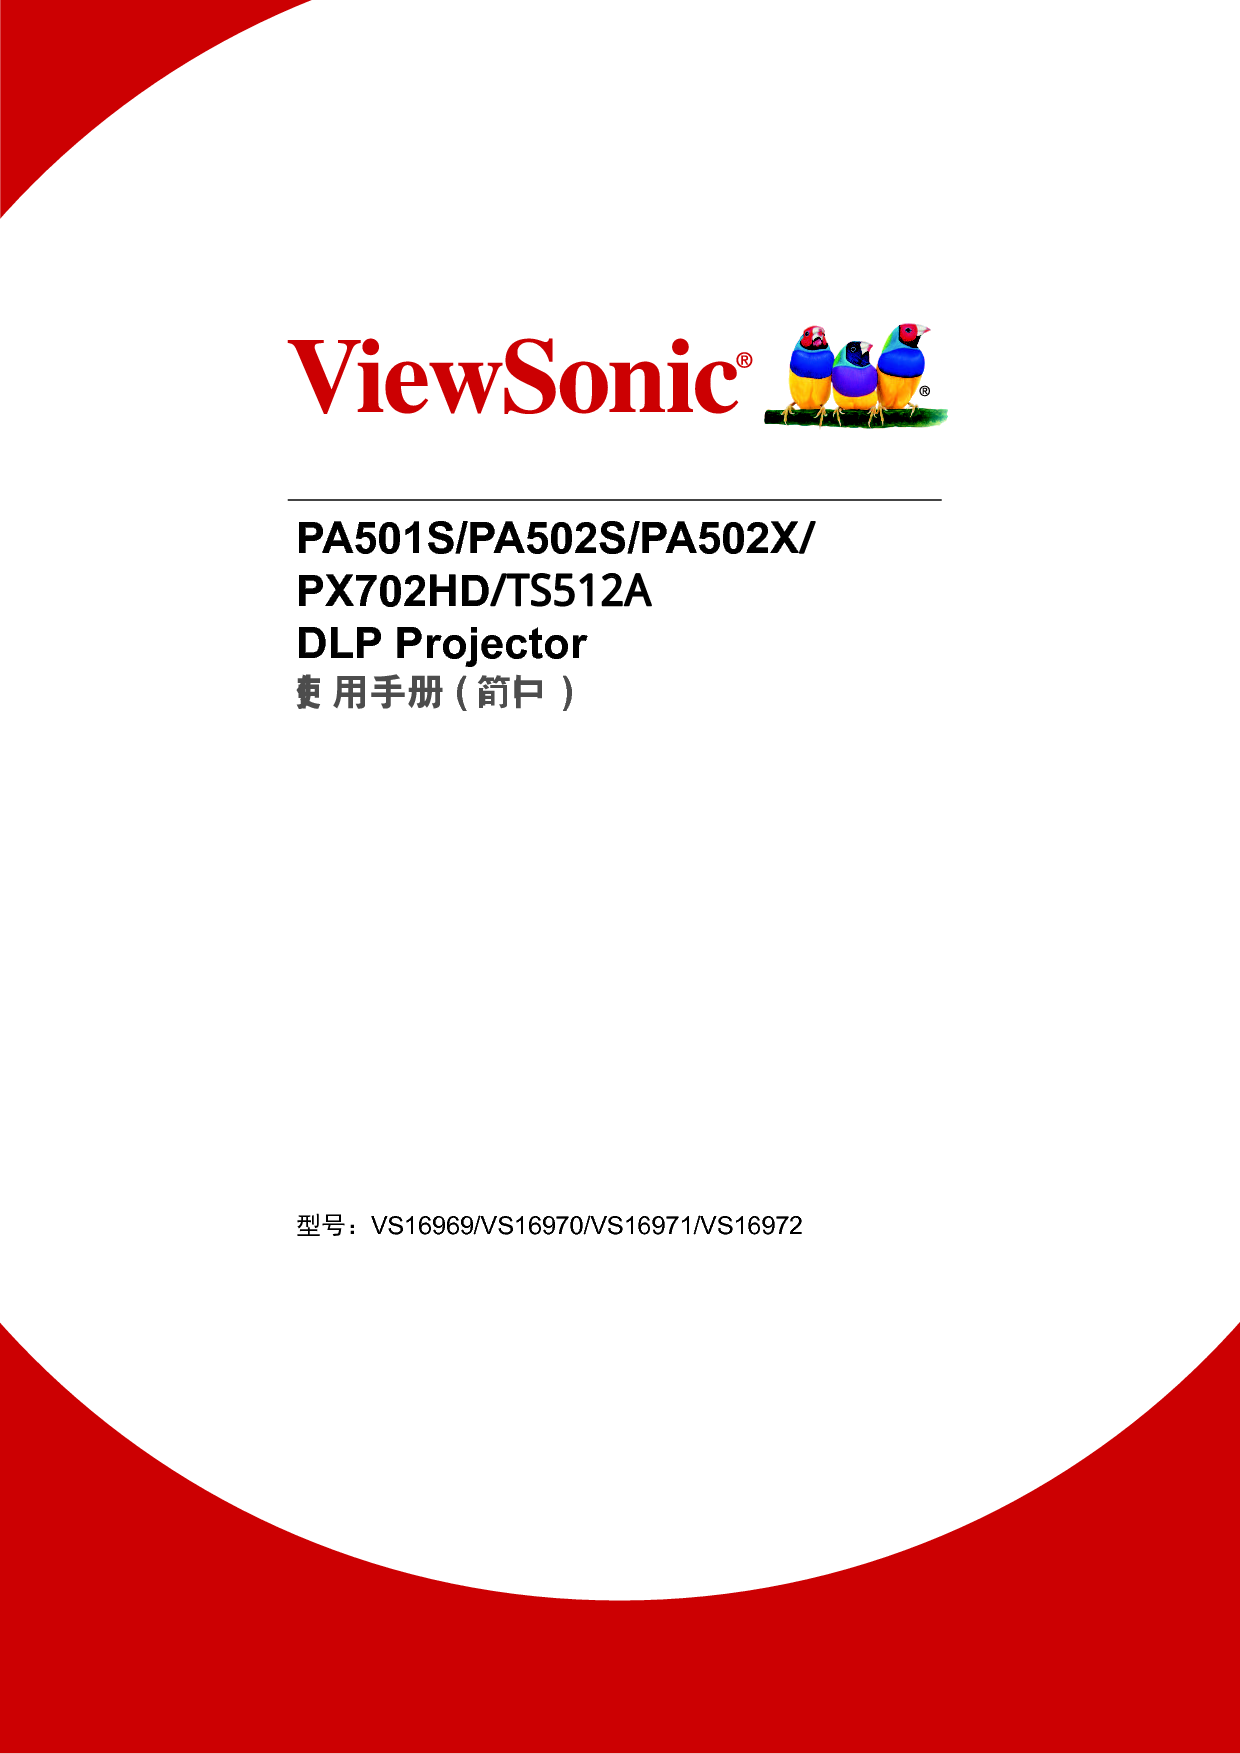 优派 ViewSonic PA501S, PX702HD, TS512A 使用说明书 封面